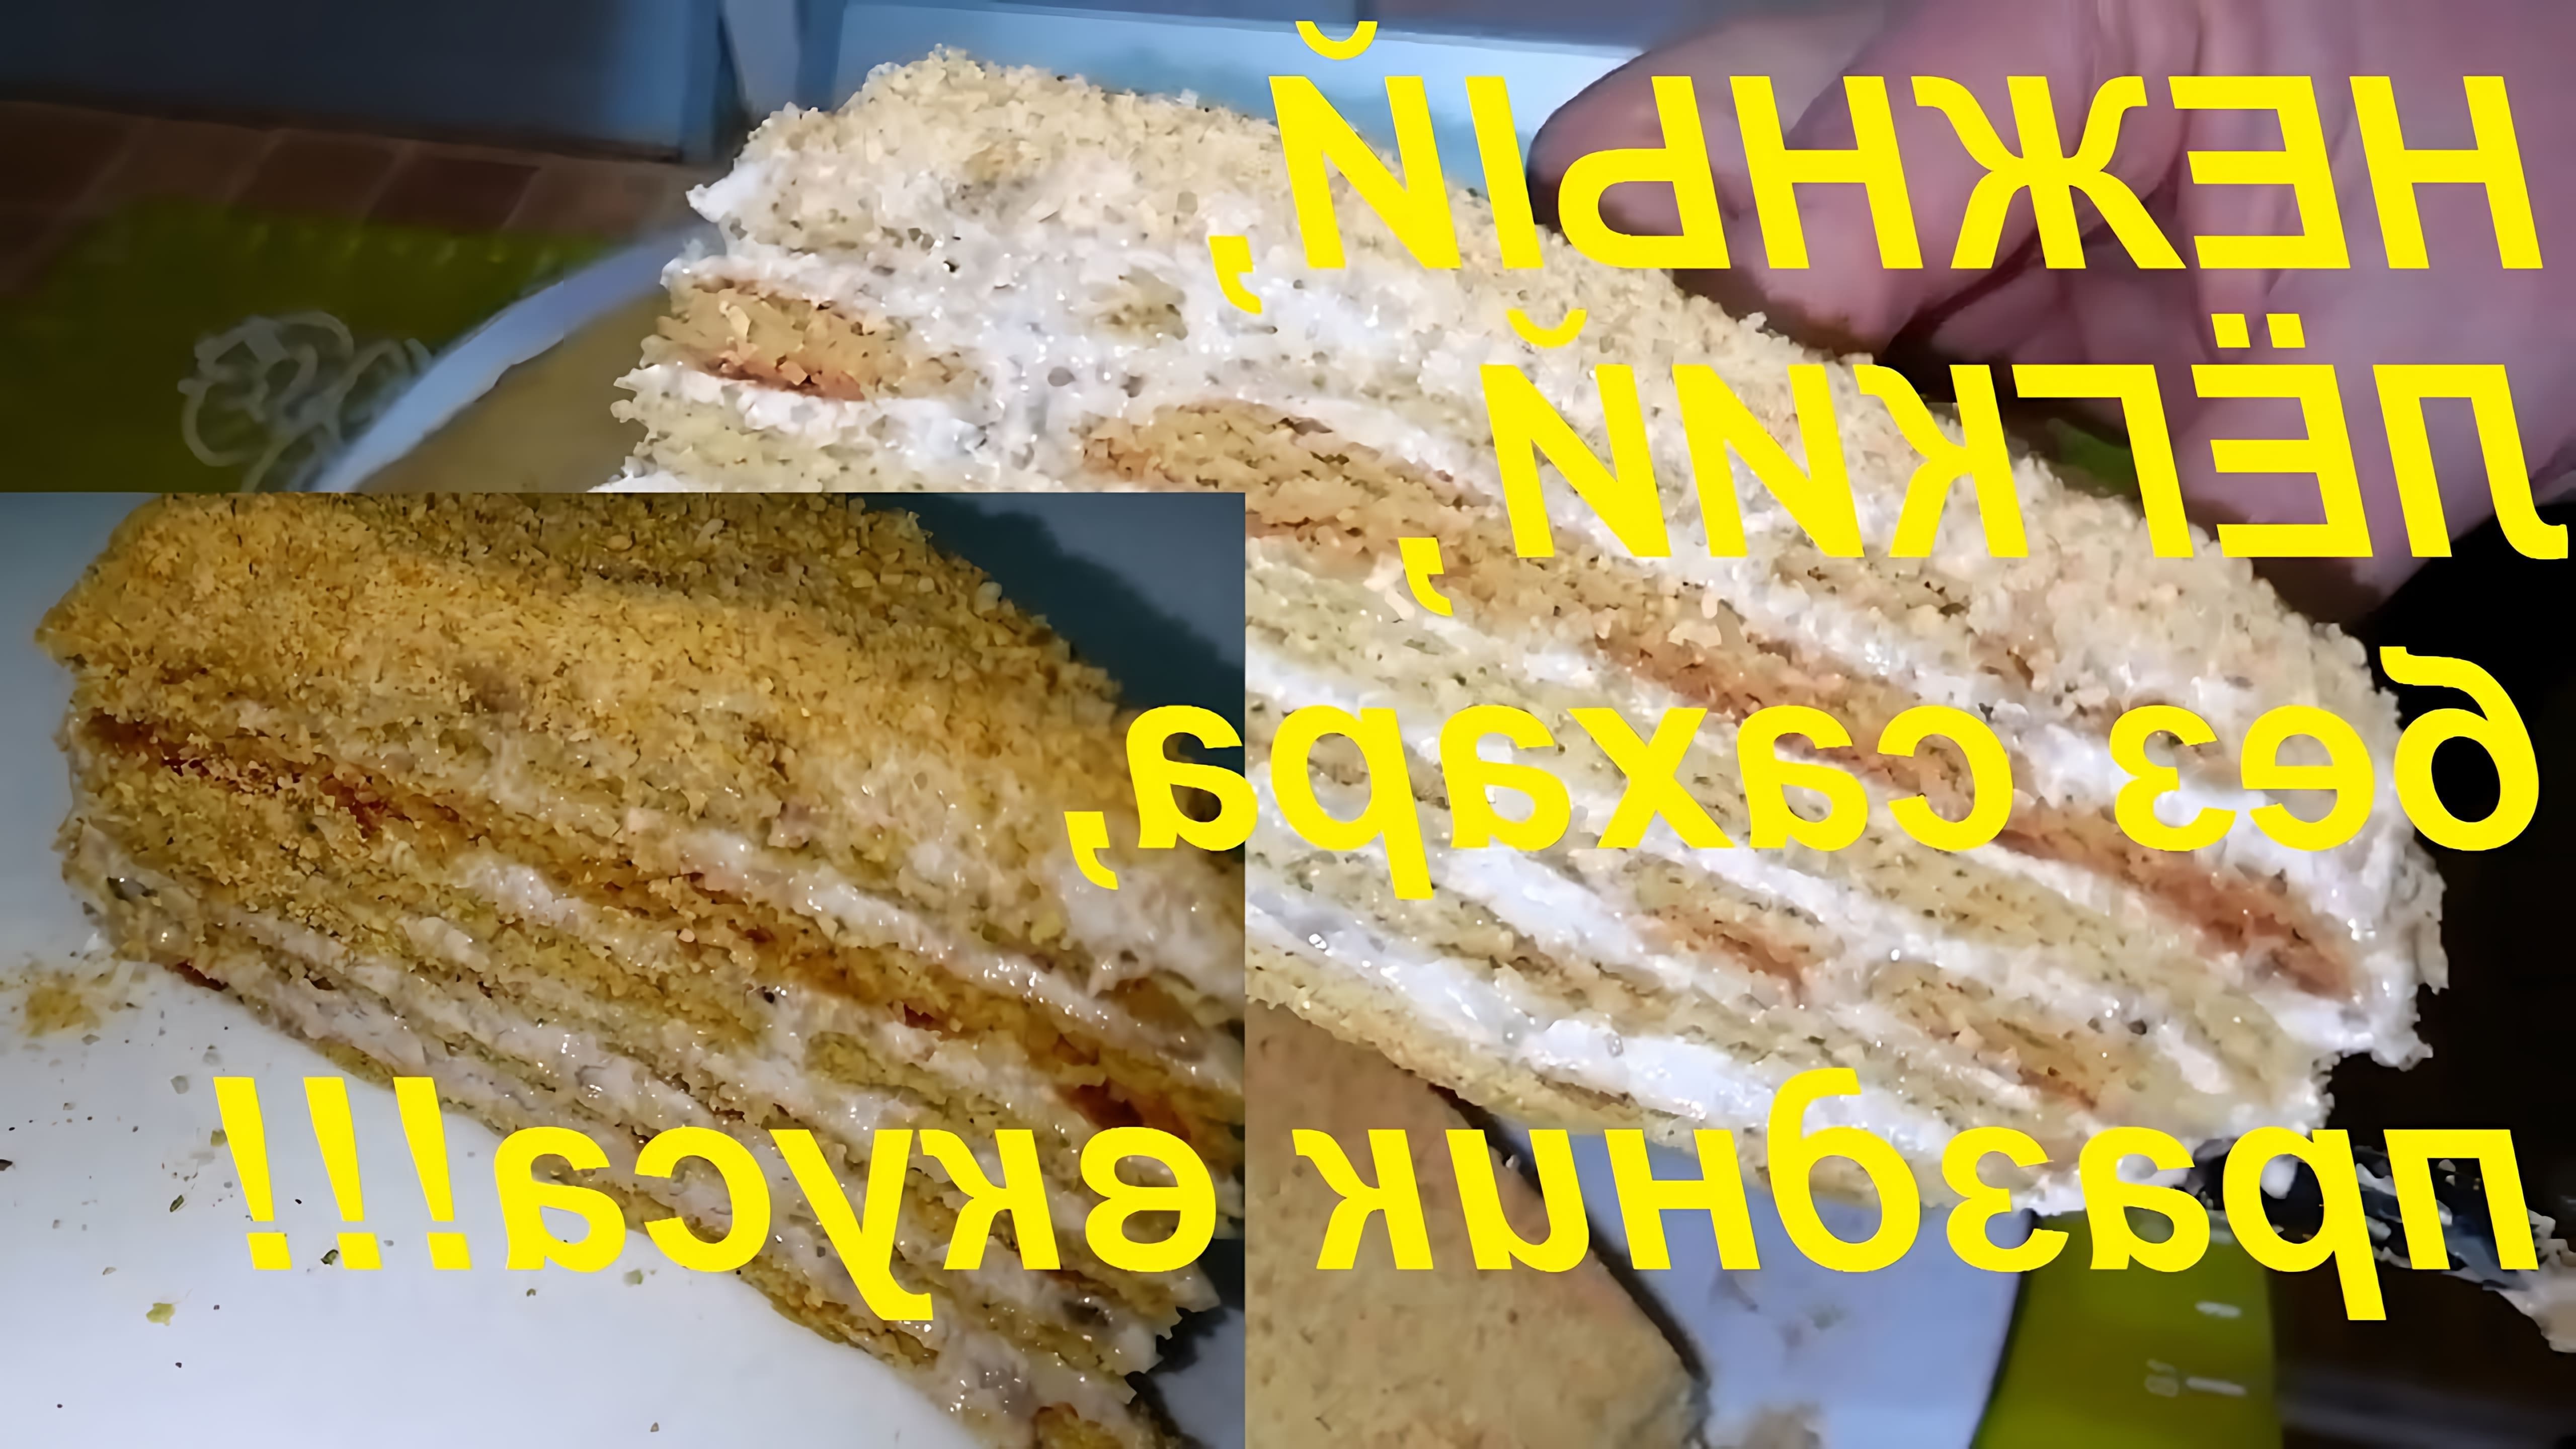 В этом видео демонстрируется рецепт приготовления торта без сахара, который является малокалорийным и понравится всем без исключения